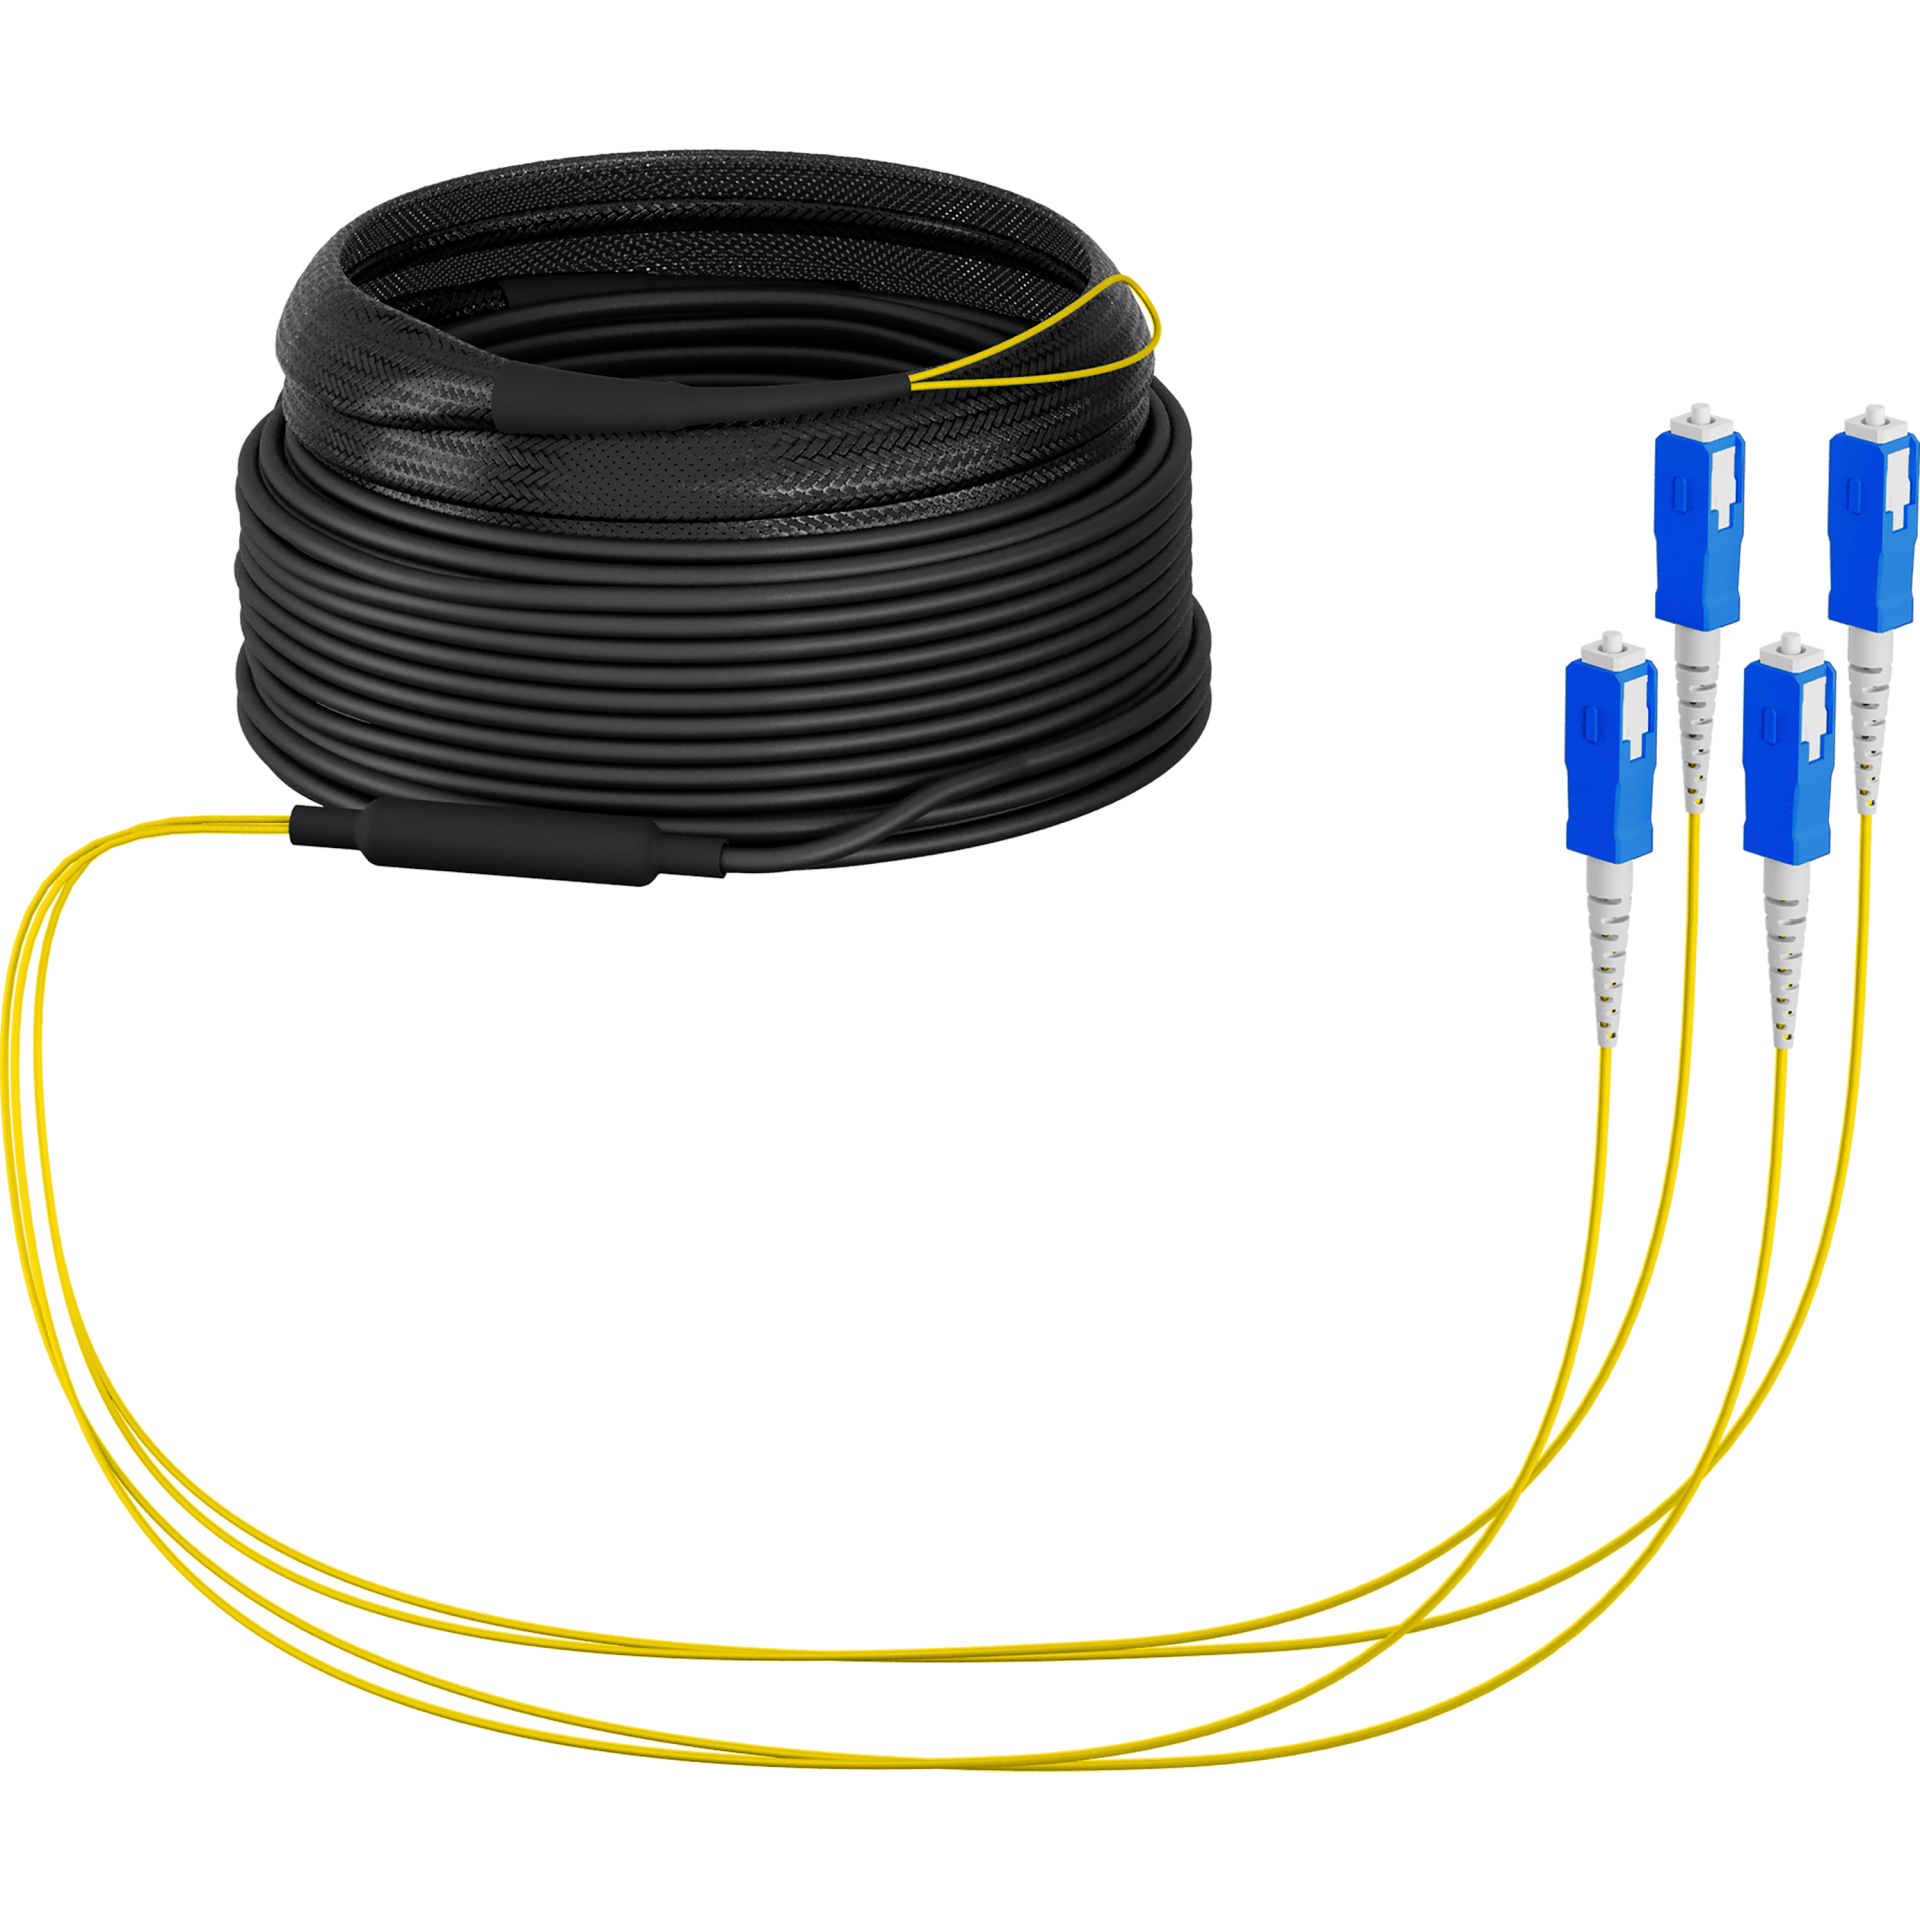 Trunk cable U-DQ(ZN)BH OS2 4E (1x4) SC-SC,30m Dca LSZH